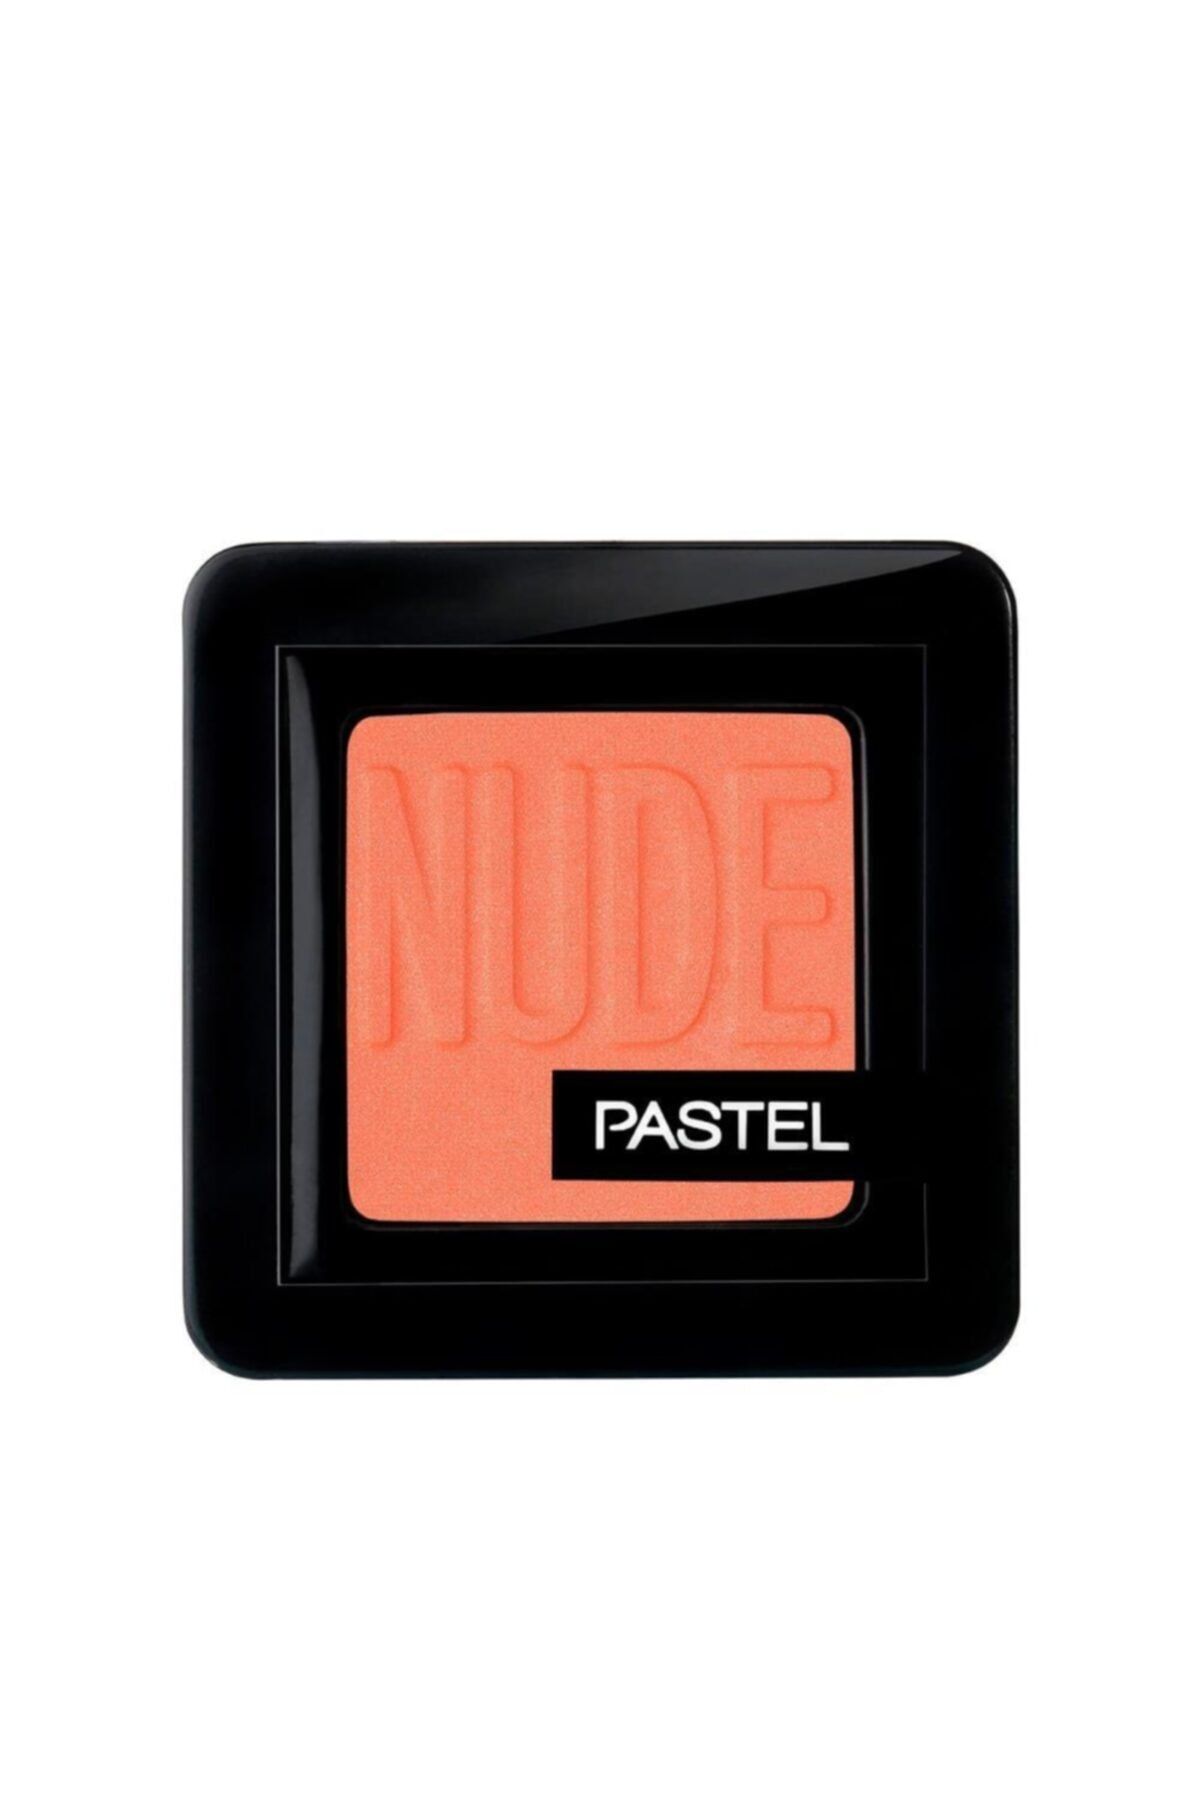 Pastel Marka: Profashion Nude Single Eyeshadow No 85 Peach - Nude Tekli Far Kategori: Göz Farı